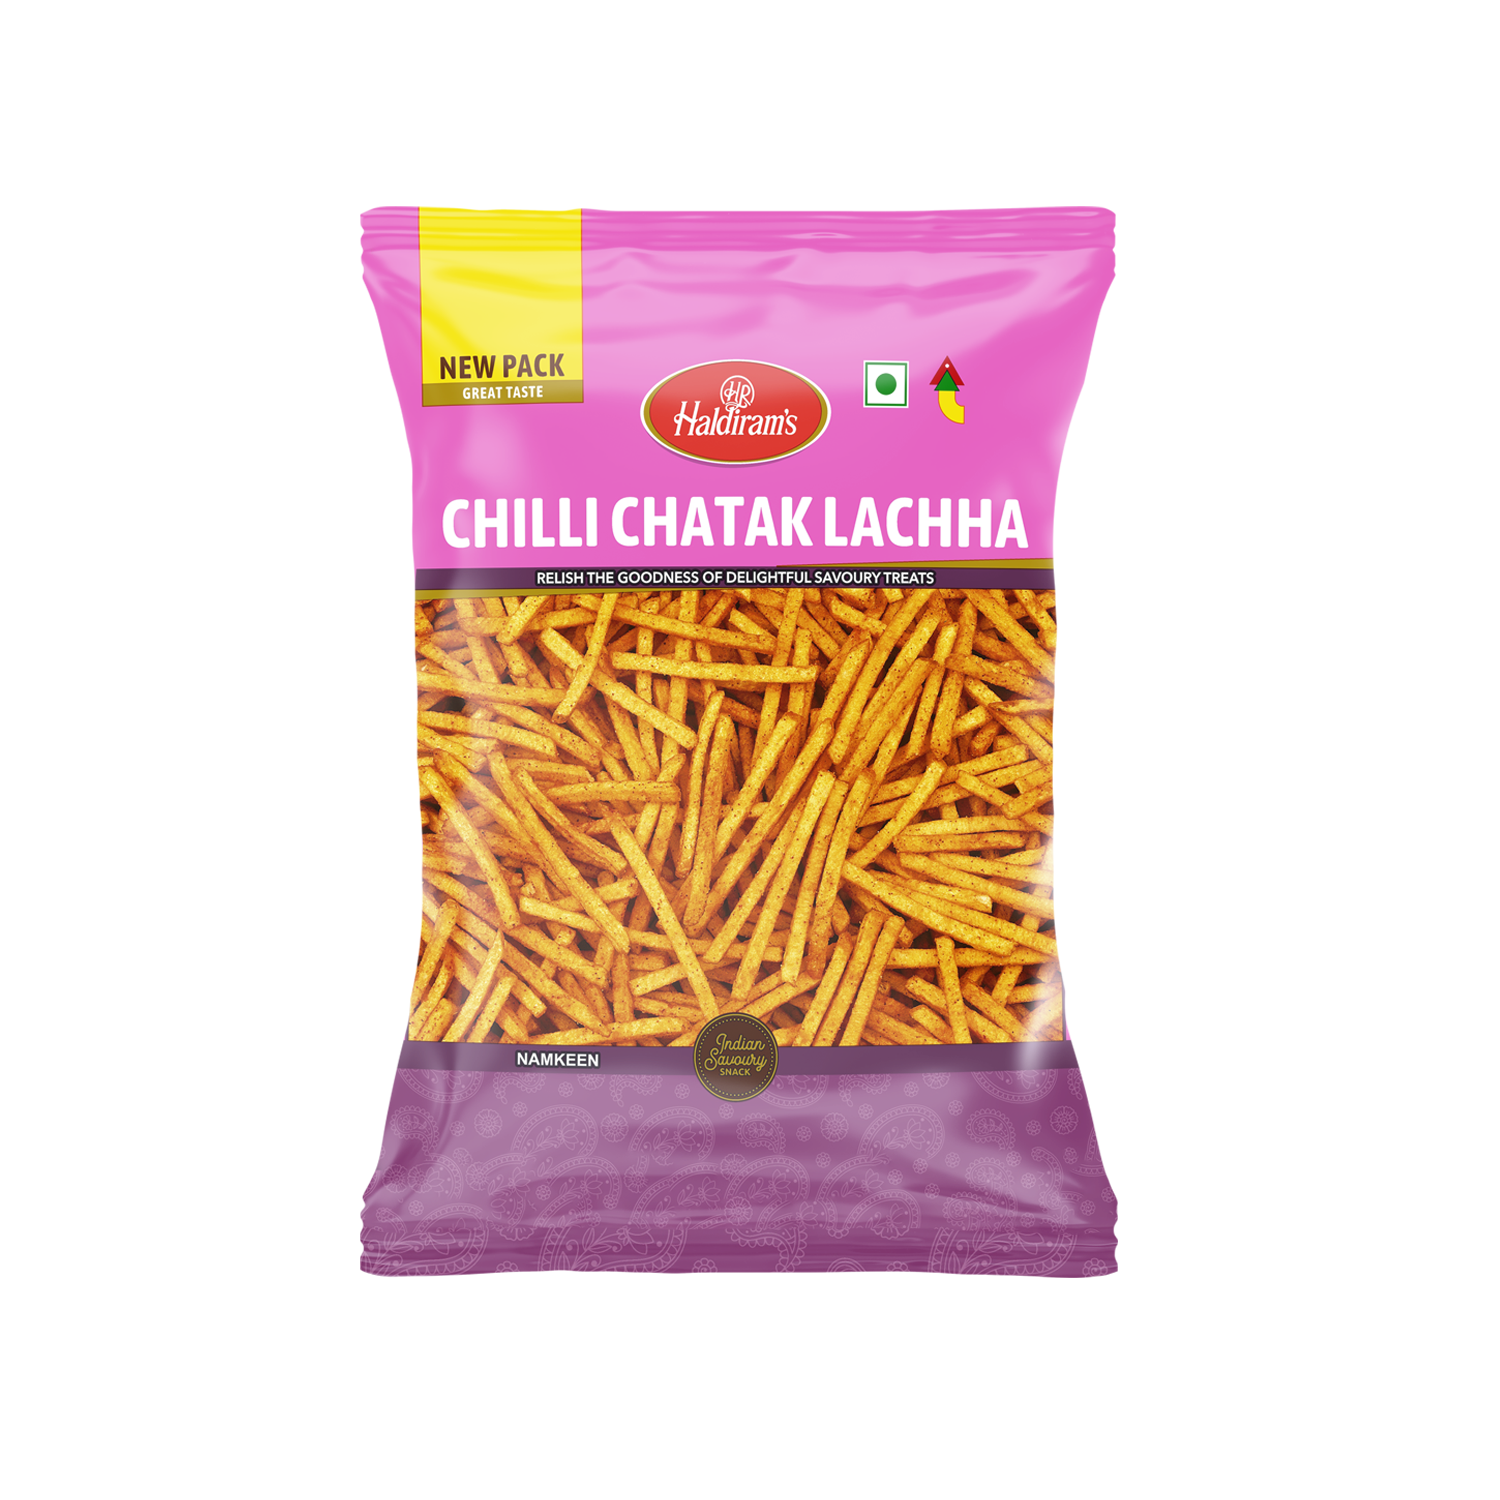 Chilli Chatak Lachha